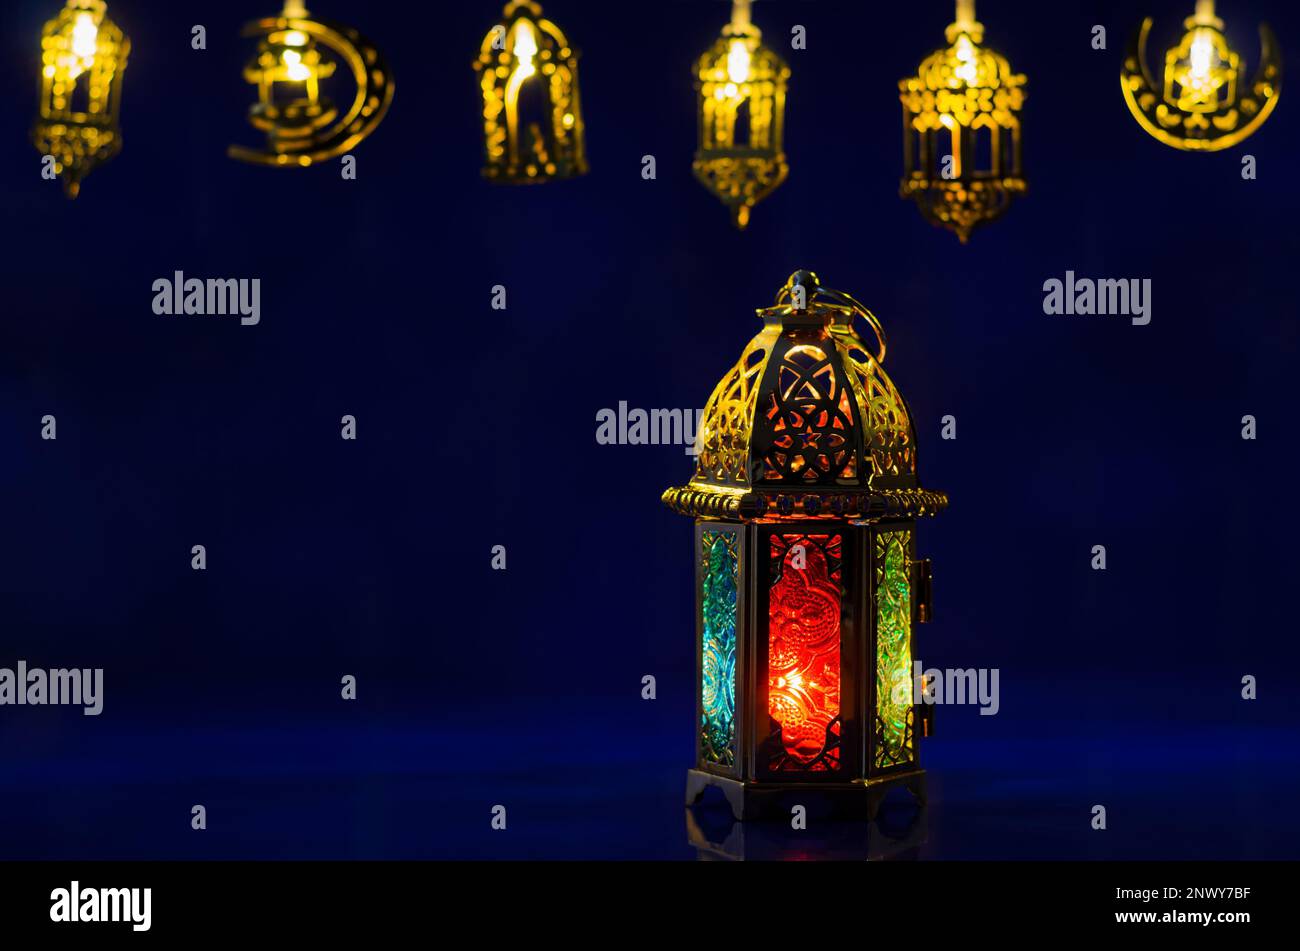 La lanterna dorata si accende su sfondo blu scuro con luci decorate per la festa musulmana del mese santo di Ramadan Kareem. Foto Stock